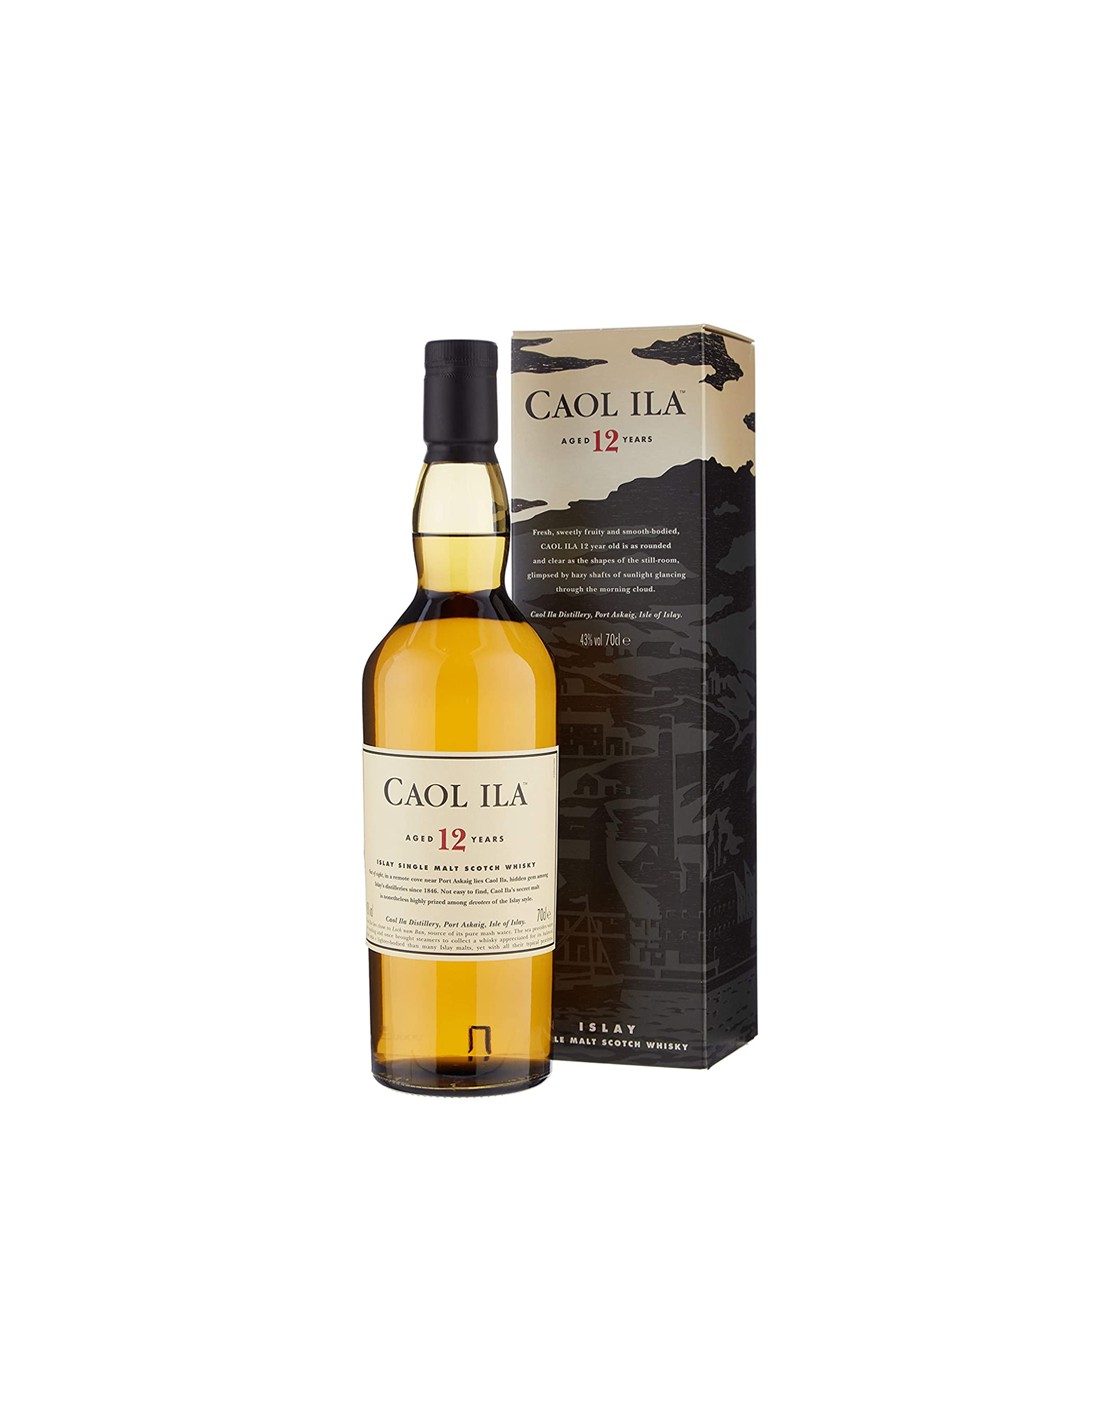 Whisky Caol Ila Islay Single Malt, 0.7L, 43% alc.,12 ani, Scotia alcooldiscount.ro